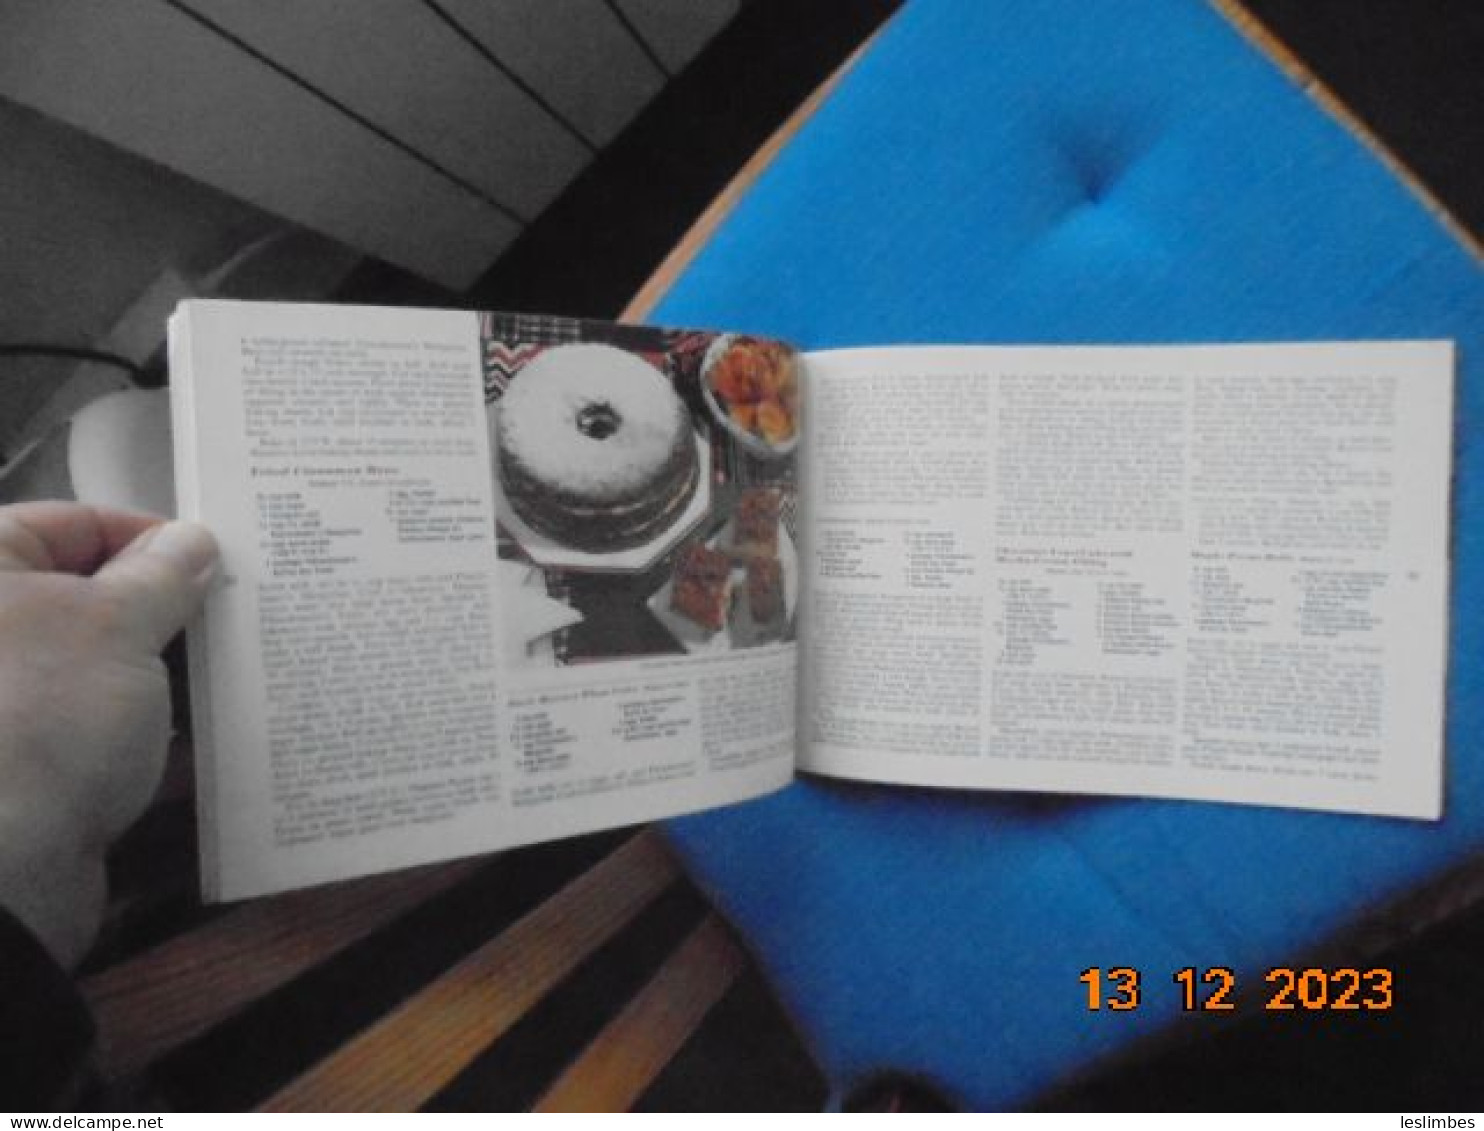 Fleischmann's Bake It Easy Yeast Book - Nordamerika